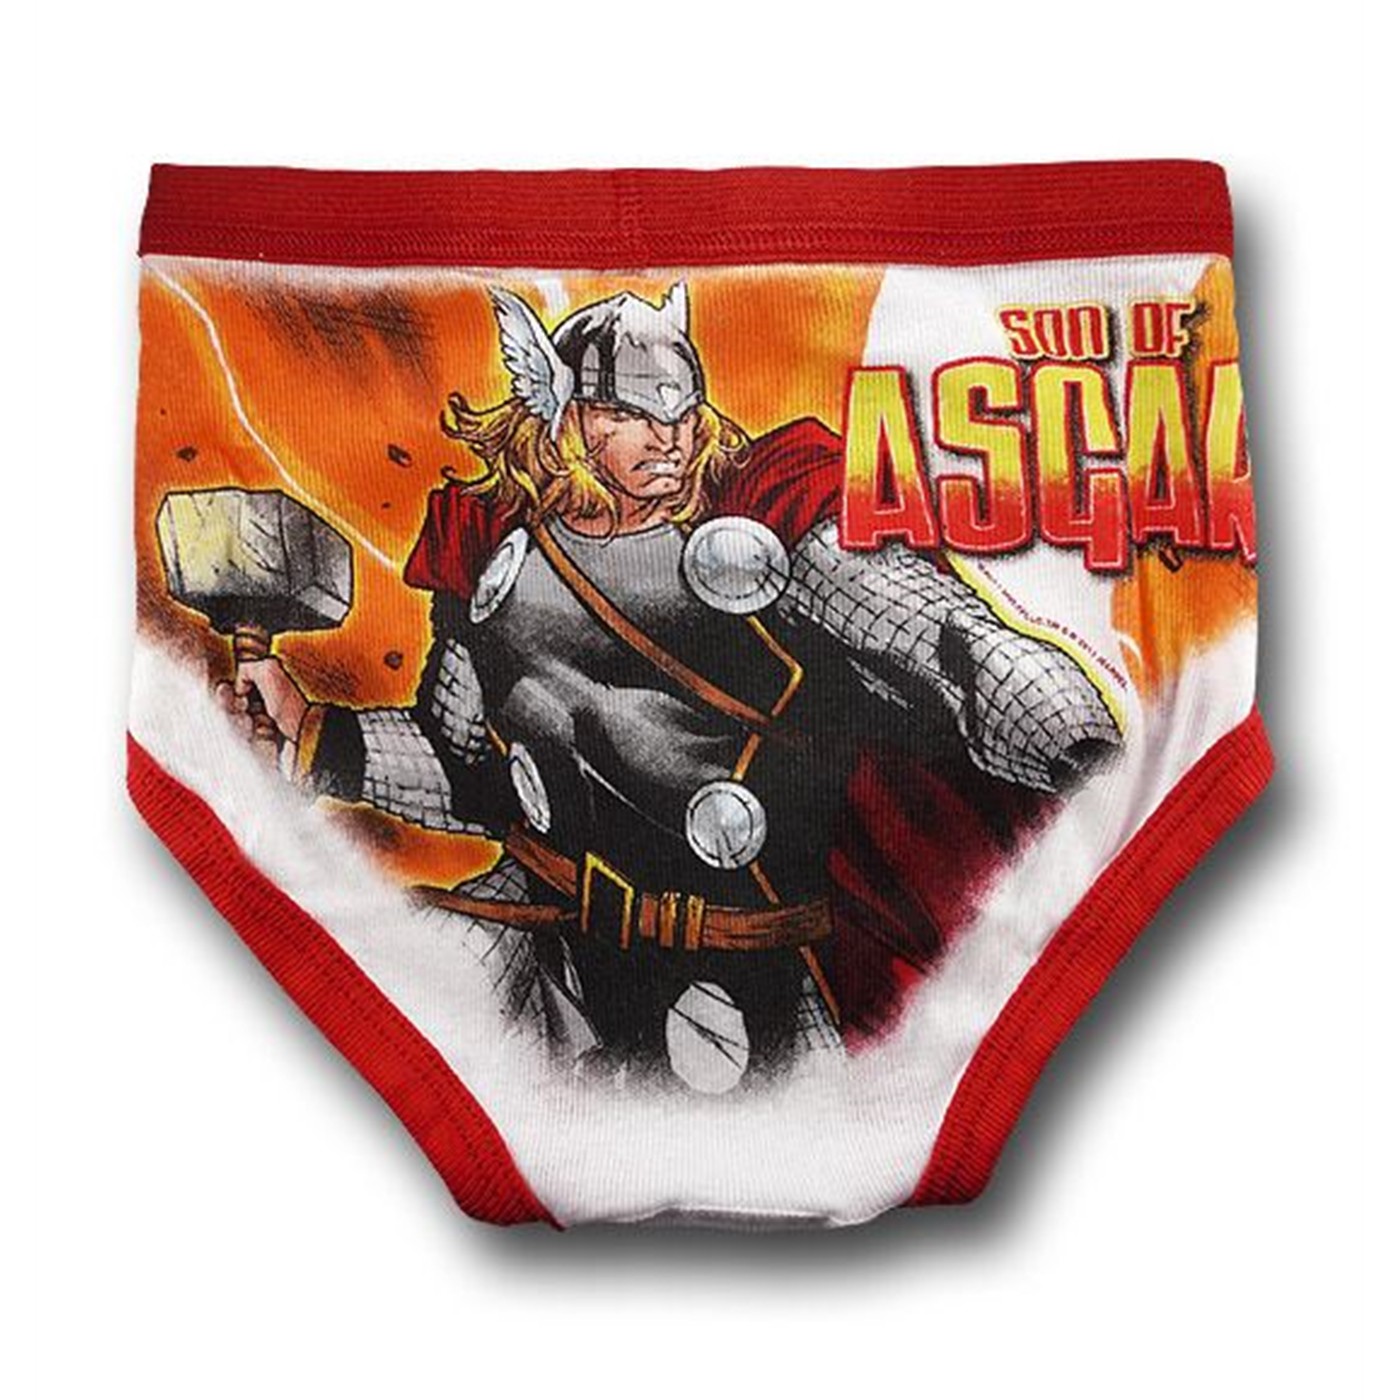 Thor Juvenile 3-Pack Underwear